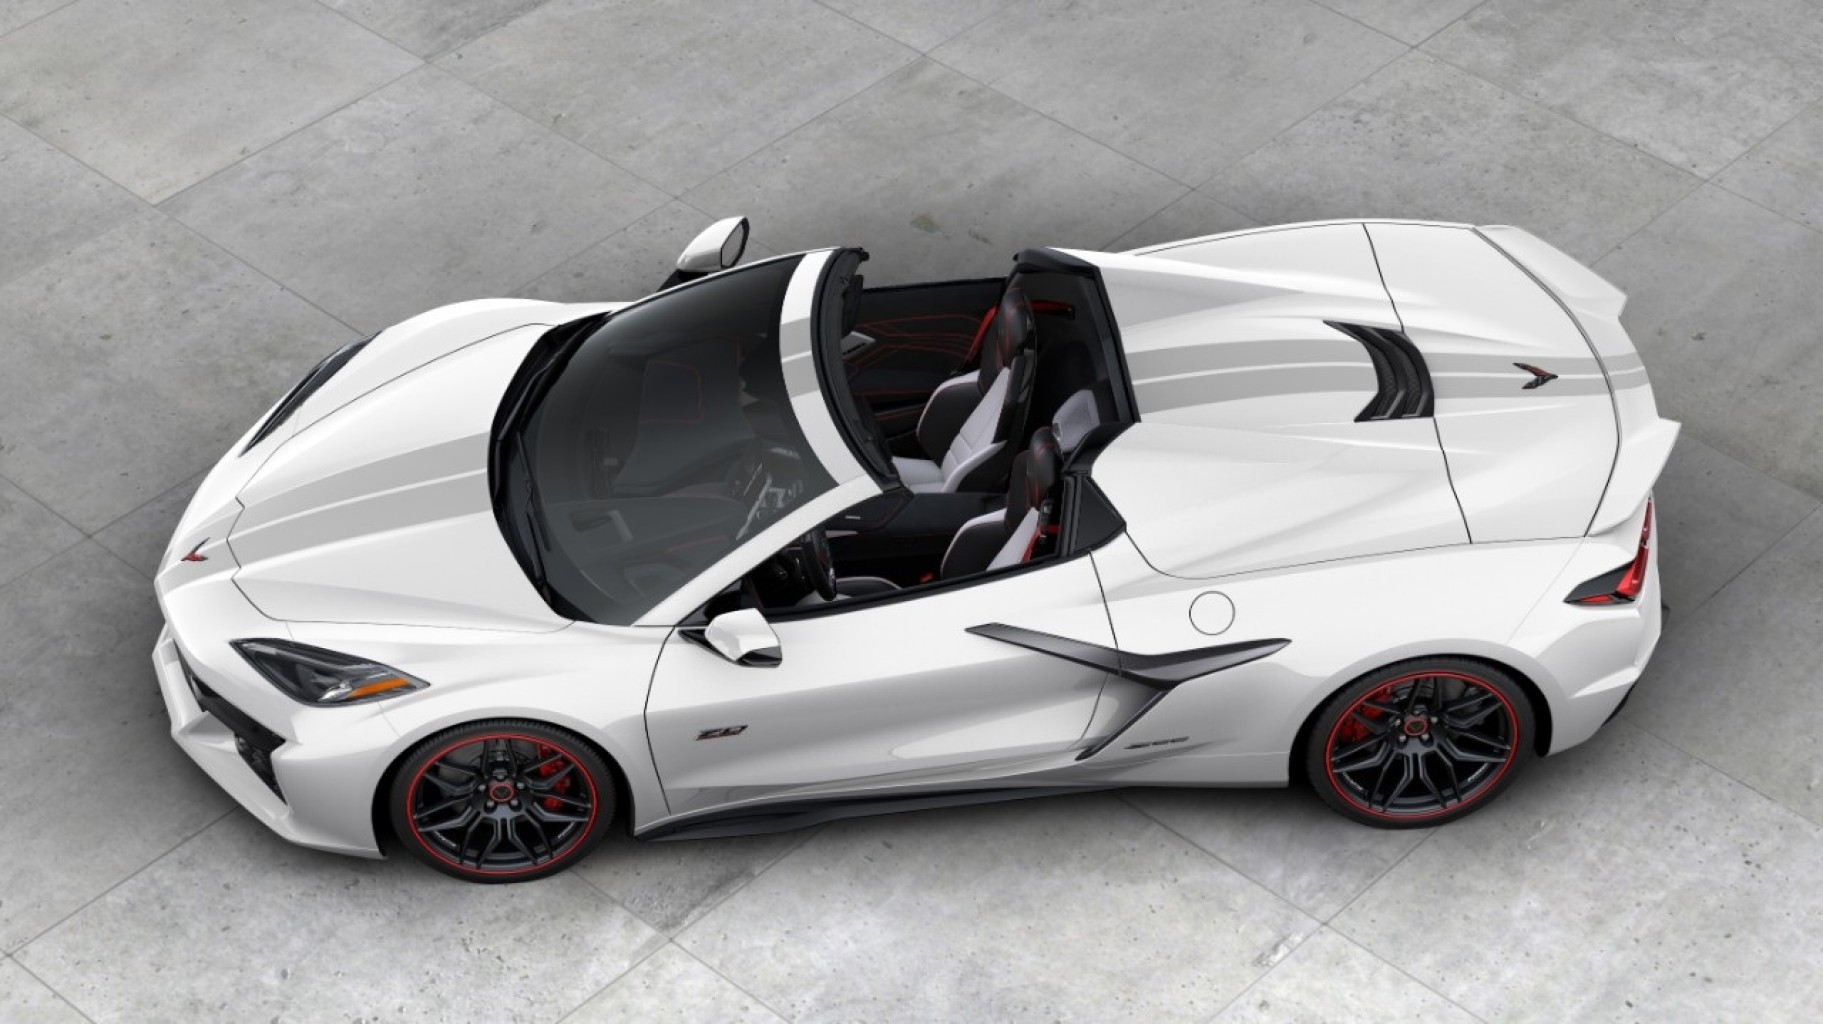 aniversario de Corvette, la marca  con más trayectoria en las carreteras